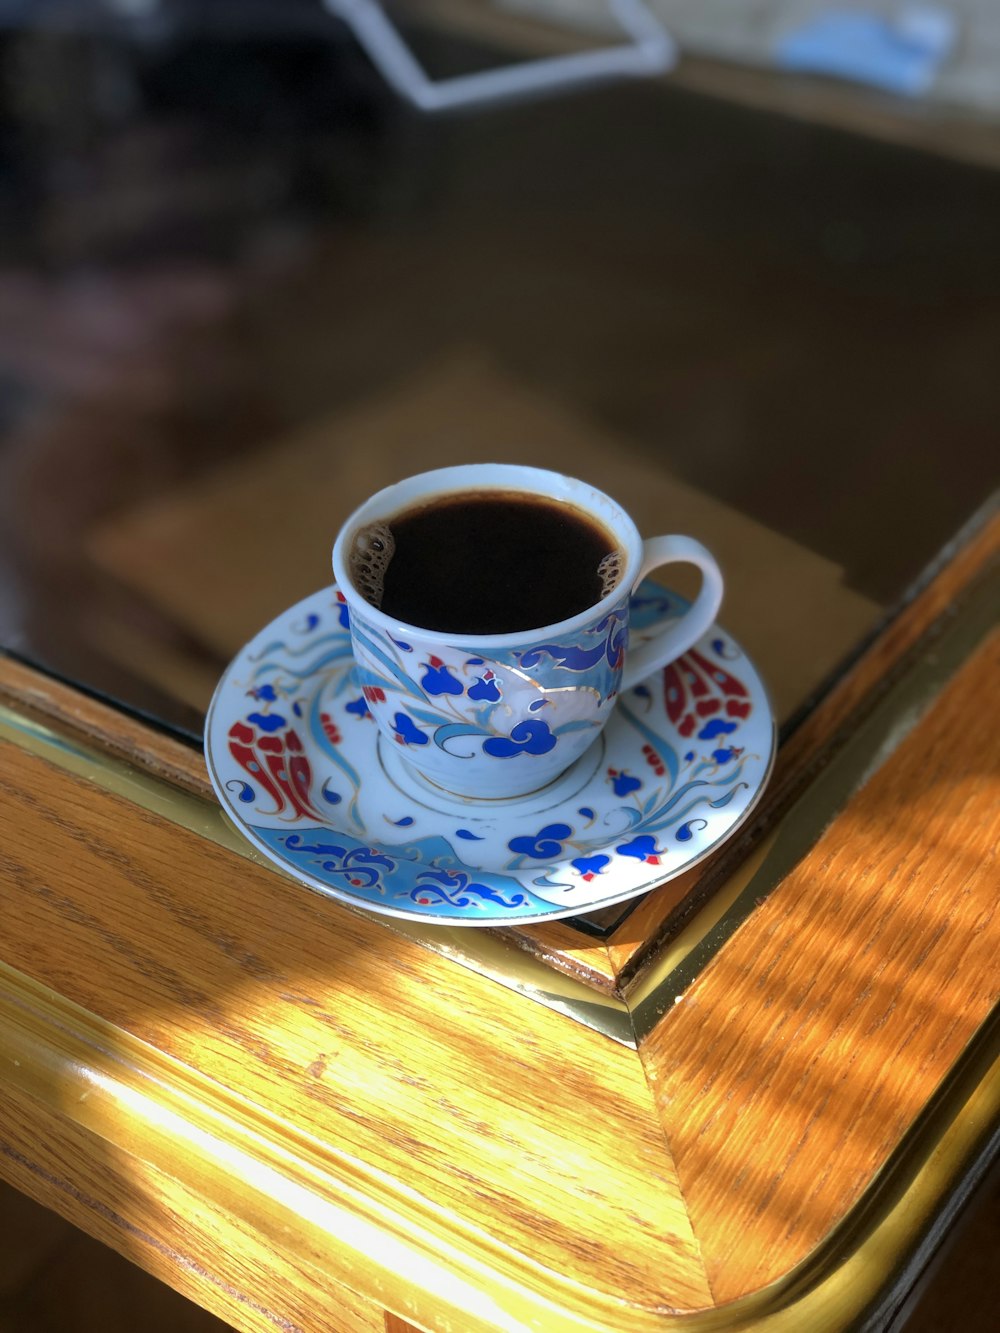 eine Tasse Kaffee auf einem Holztisch